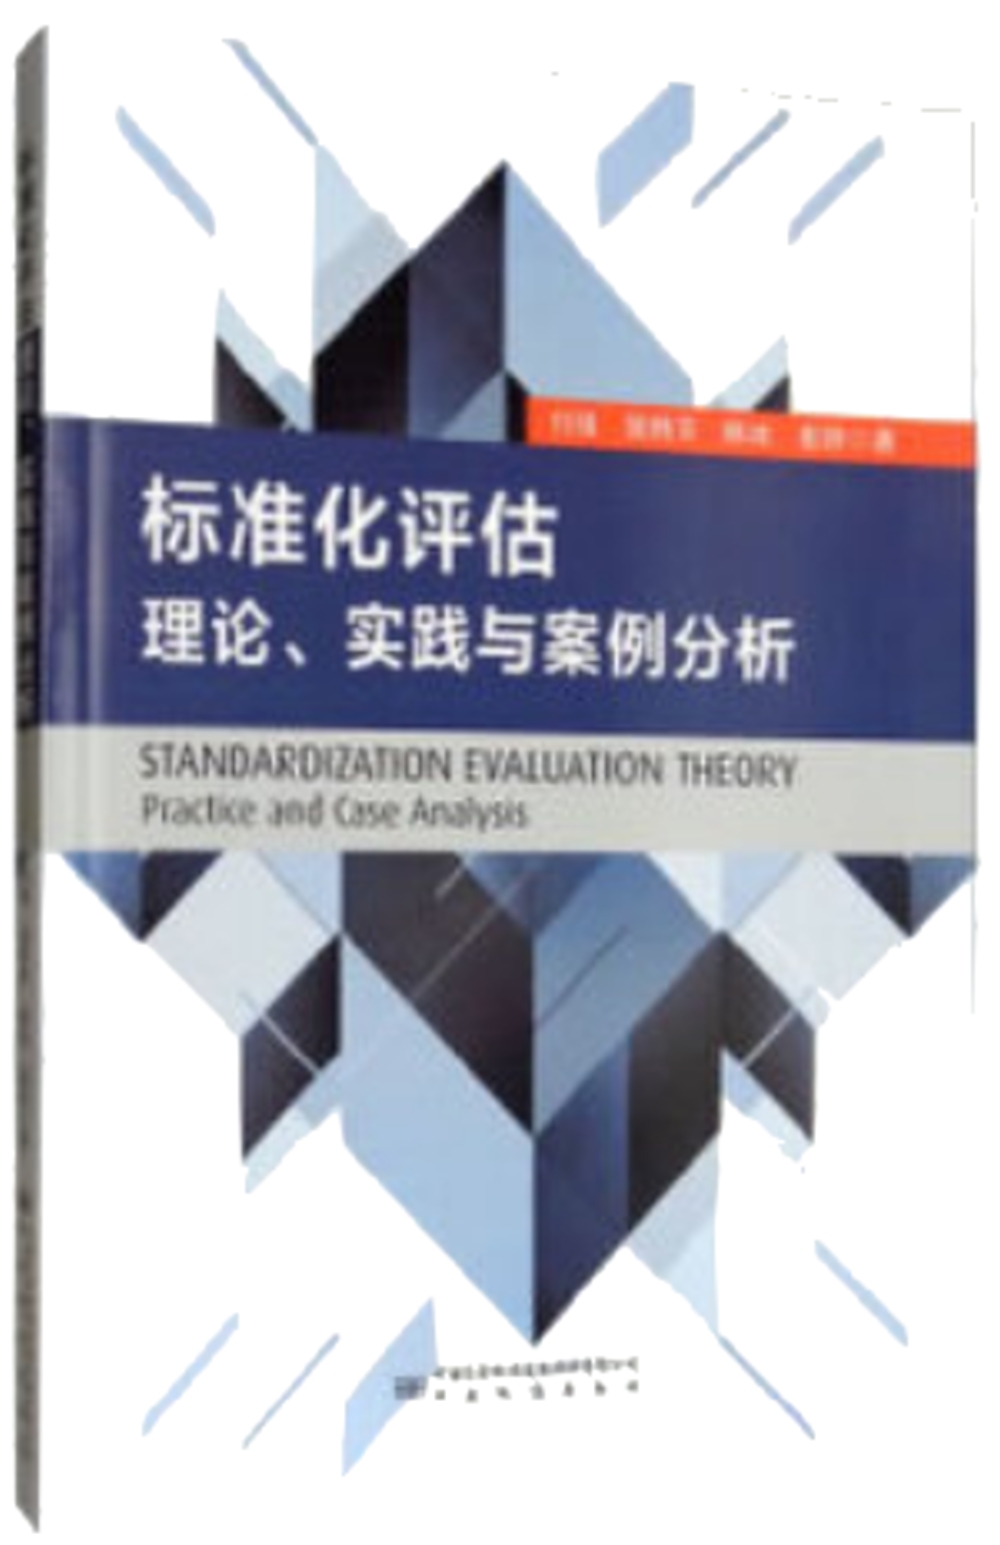 標準化評估理論、實踐與案例分析